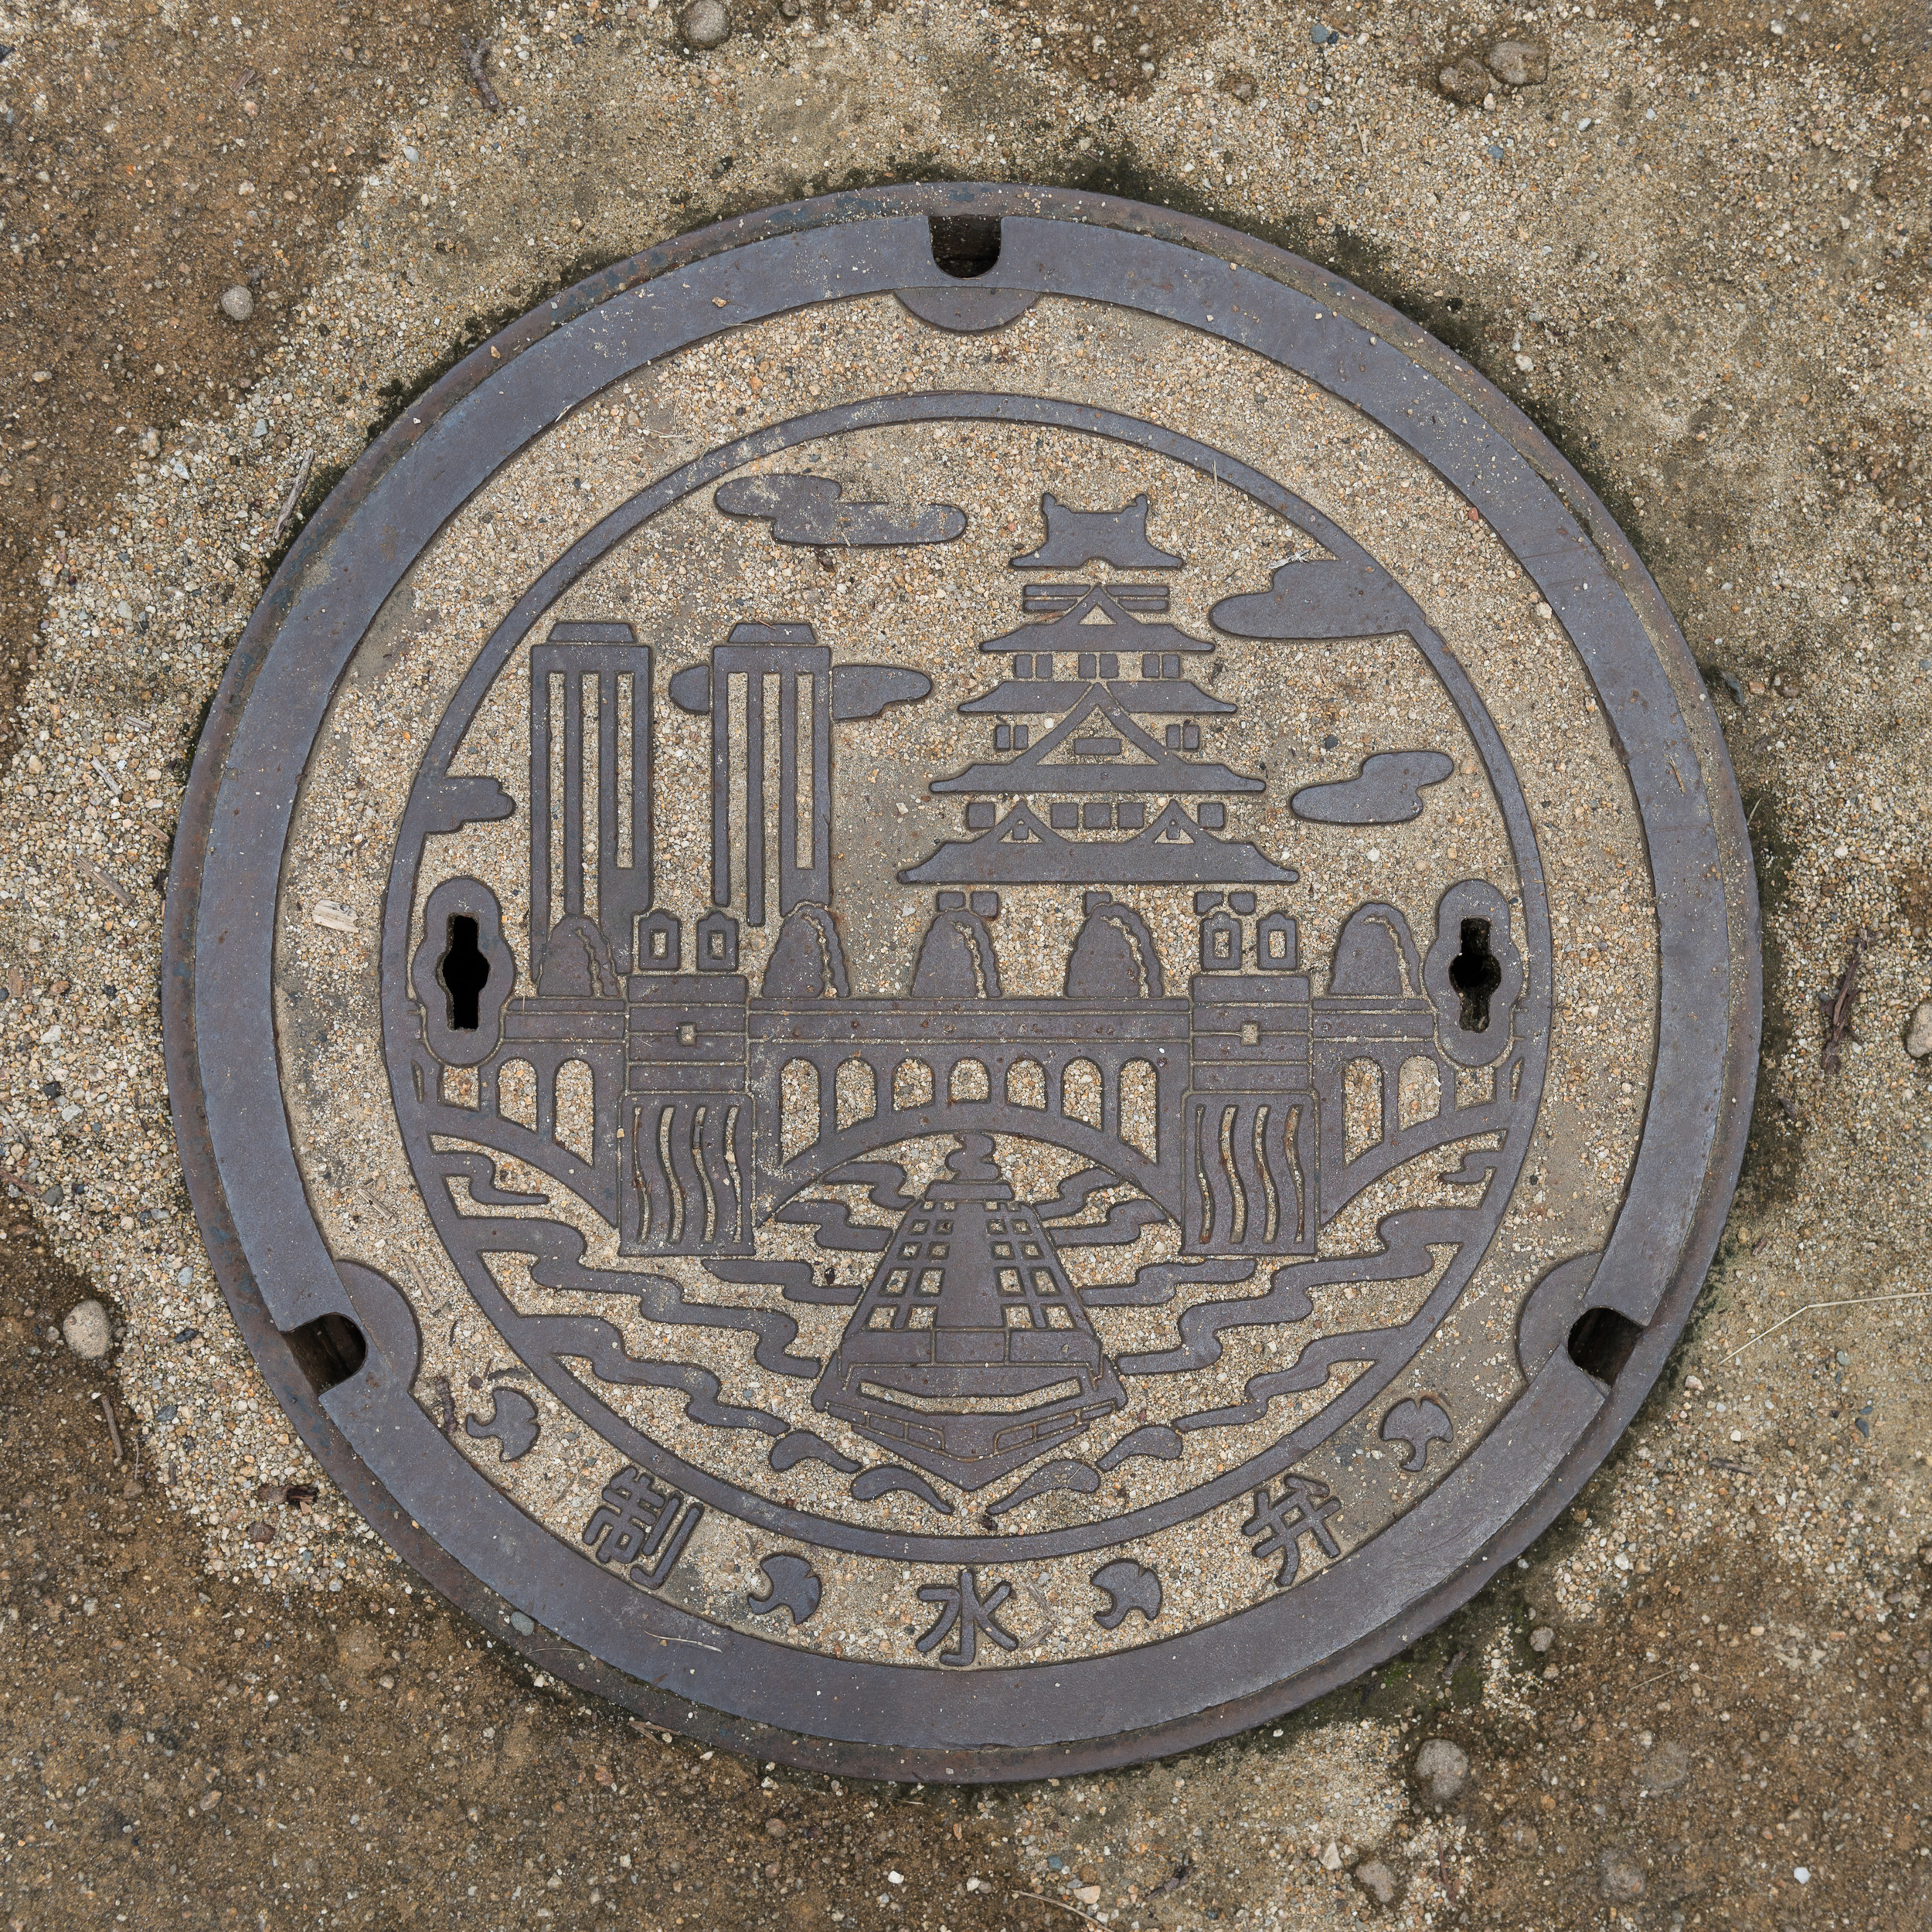 Japan_Manhole-5.jpg